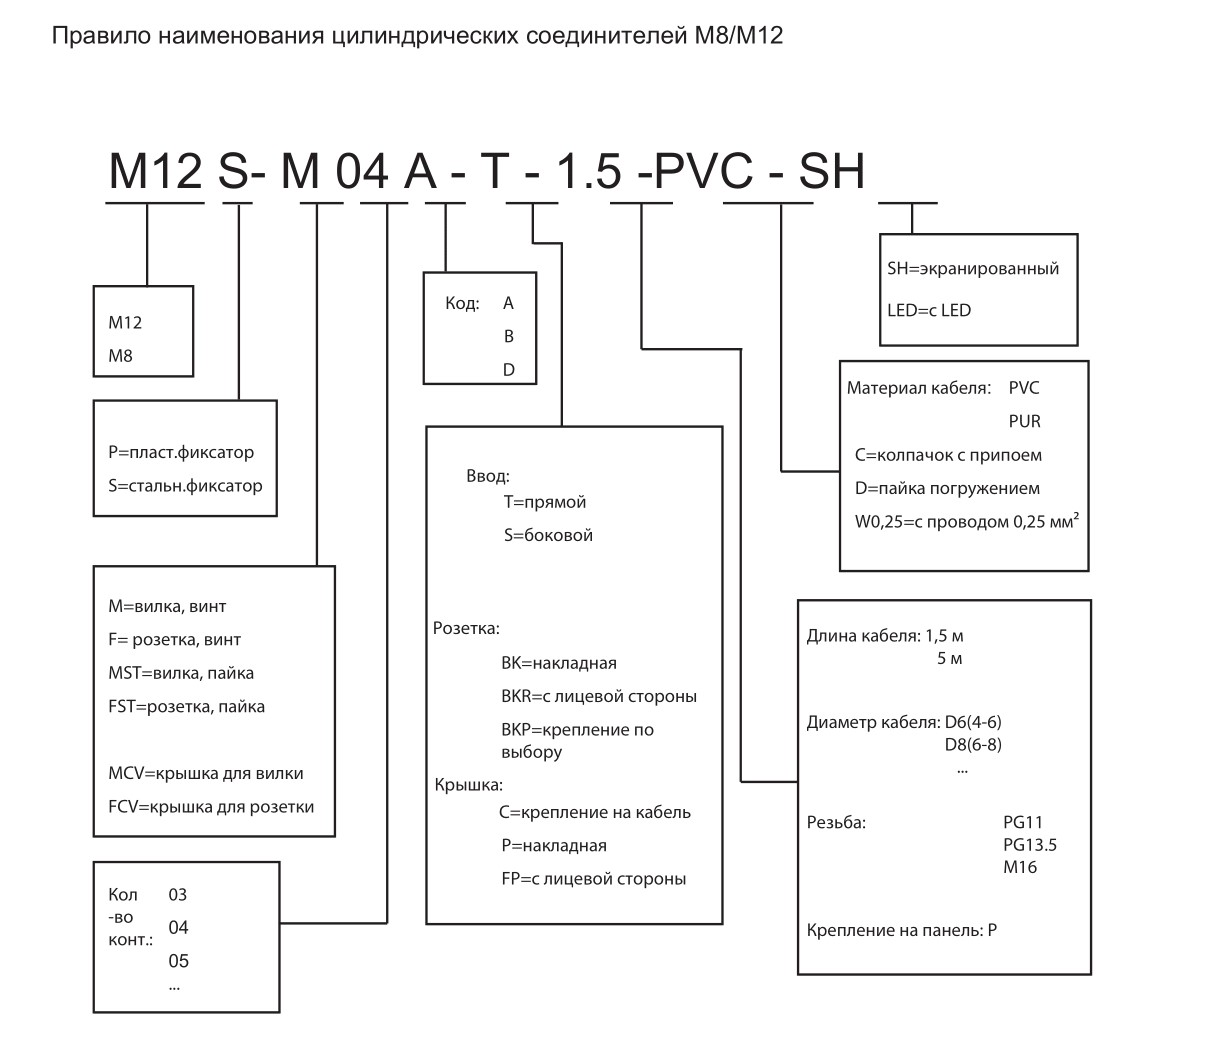 Цилиндрический соединитель-вилка M12P-M03A-T-D6 1630034113101: Структура обозначения